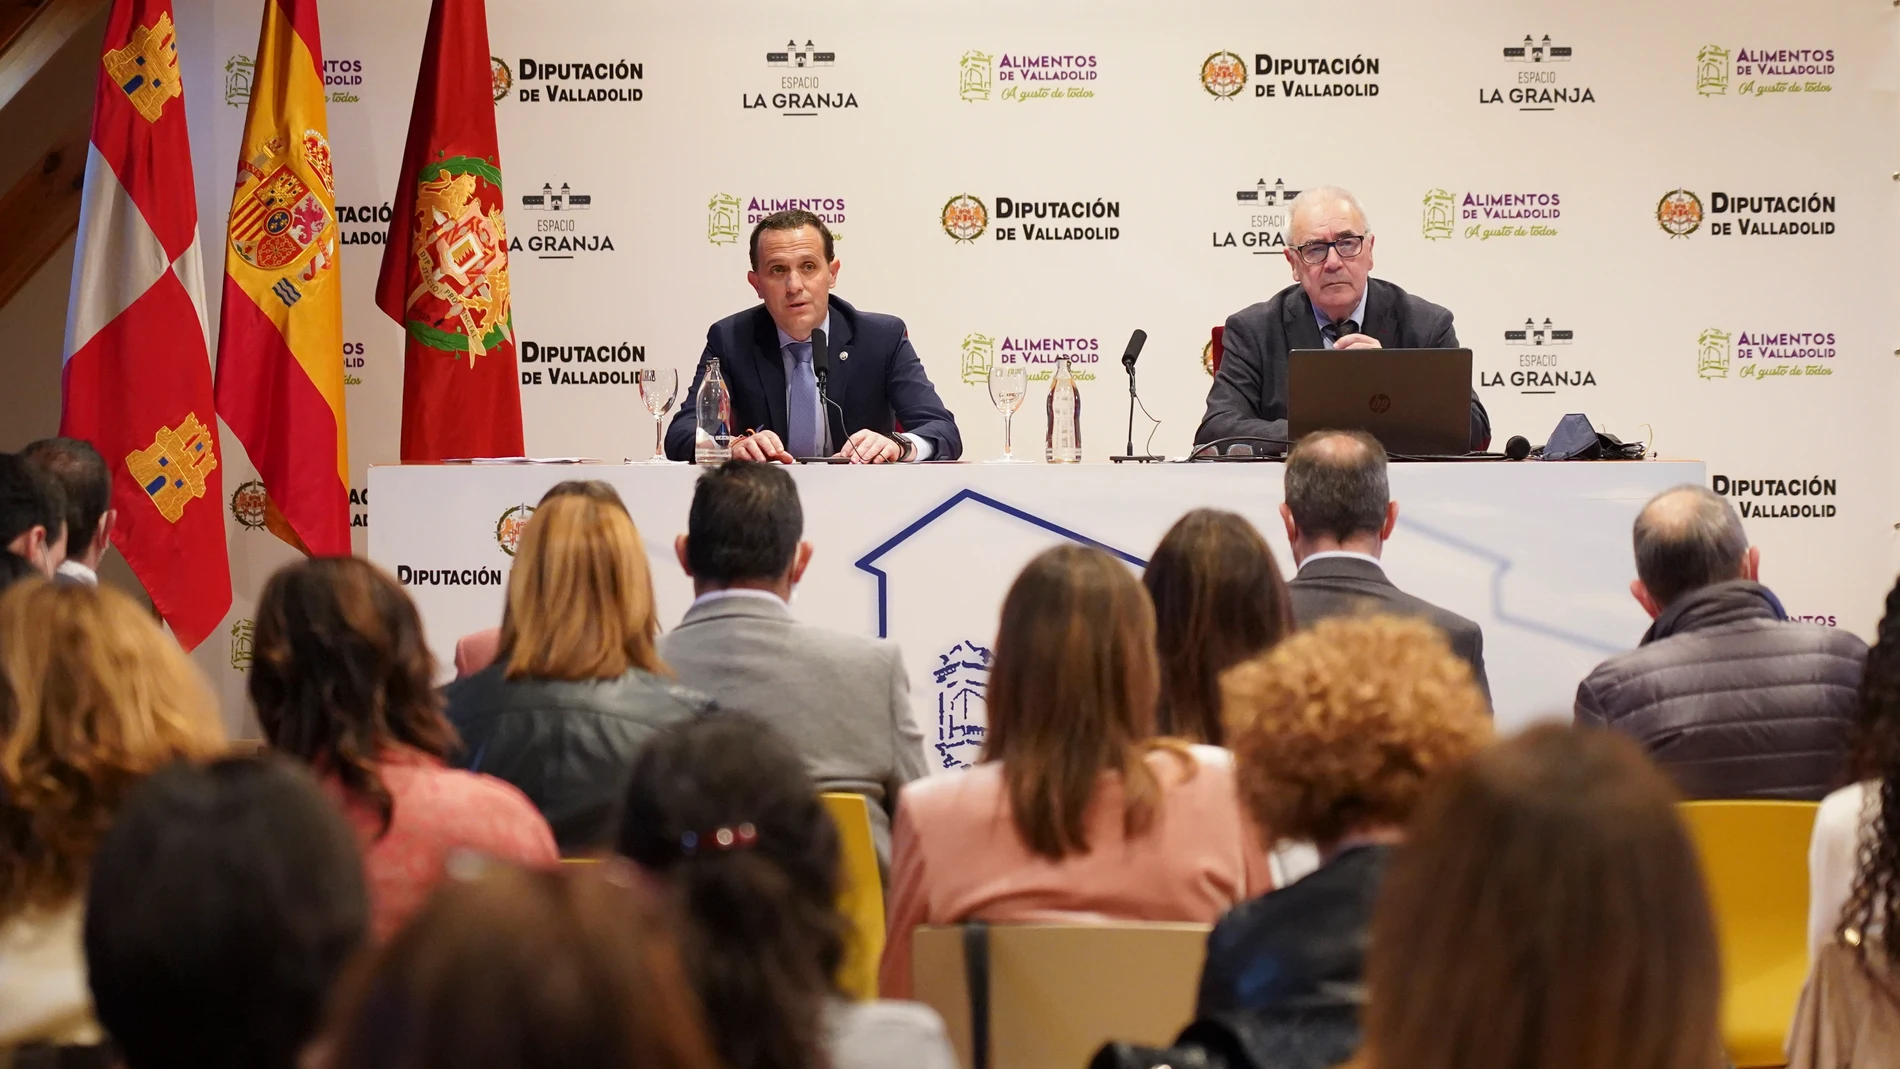 El presidente de la Diputación de Valladolid, Conrado Íscar, inaugura la jornada de sensibilización sobre el "Plan de integridad pública y lucha contra el fraude", junto al profesor Rafael Jiménez Asensio